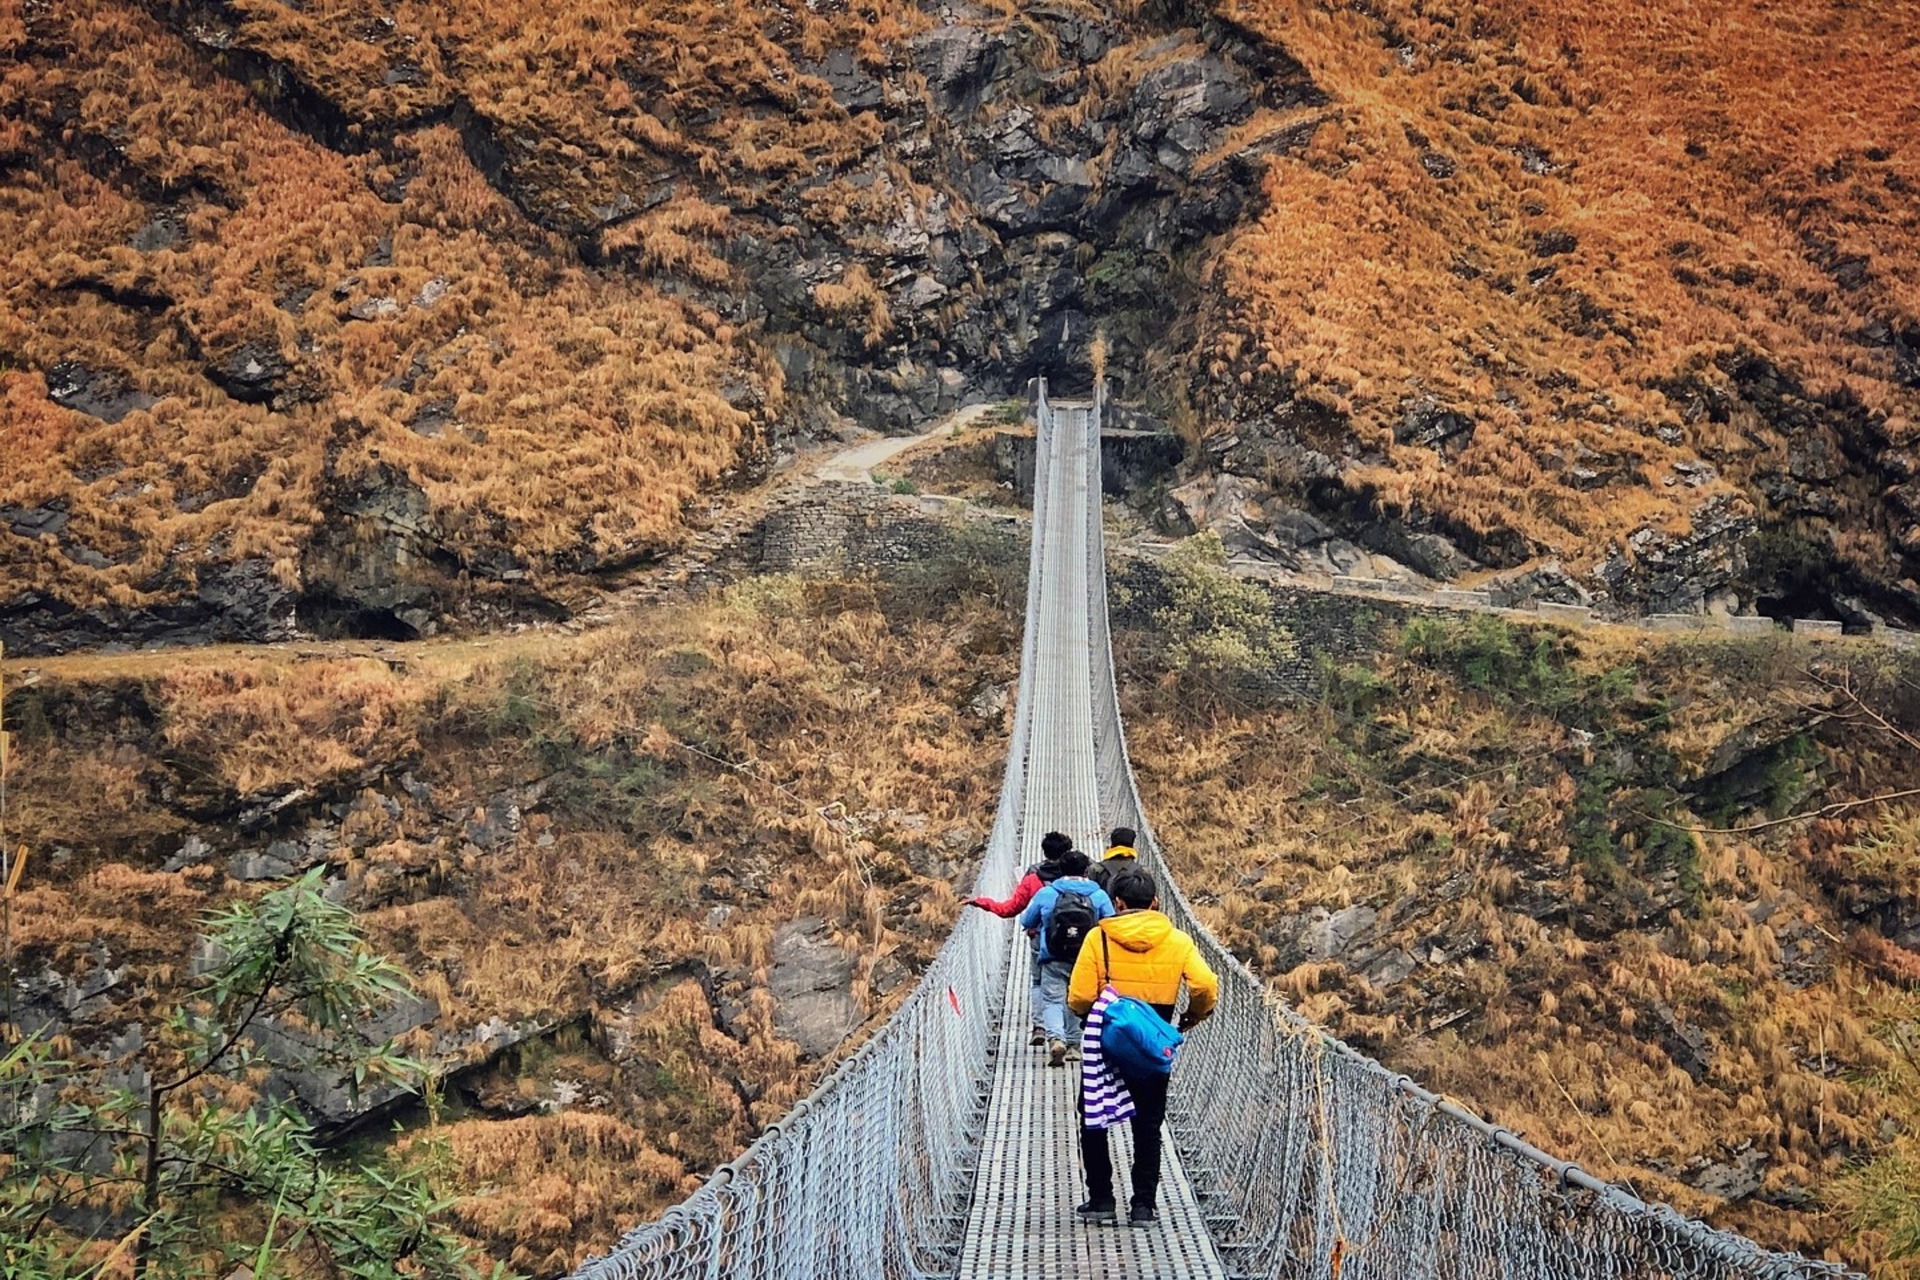 Viseći mostovi: u 63 godine projektirano i izgrađeno u Nepalu 10 tisuća visećih prolaza zahvaljujući suradnji sa Švicarskom